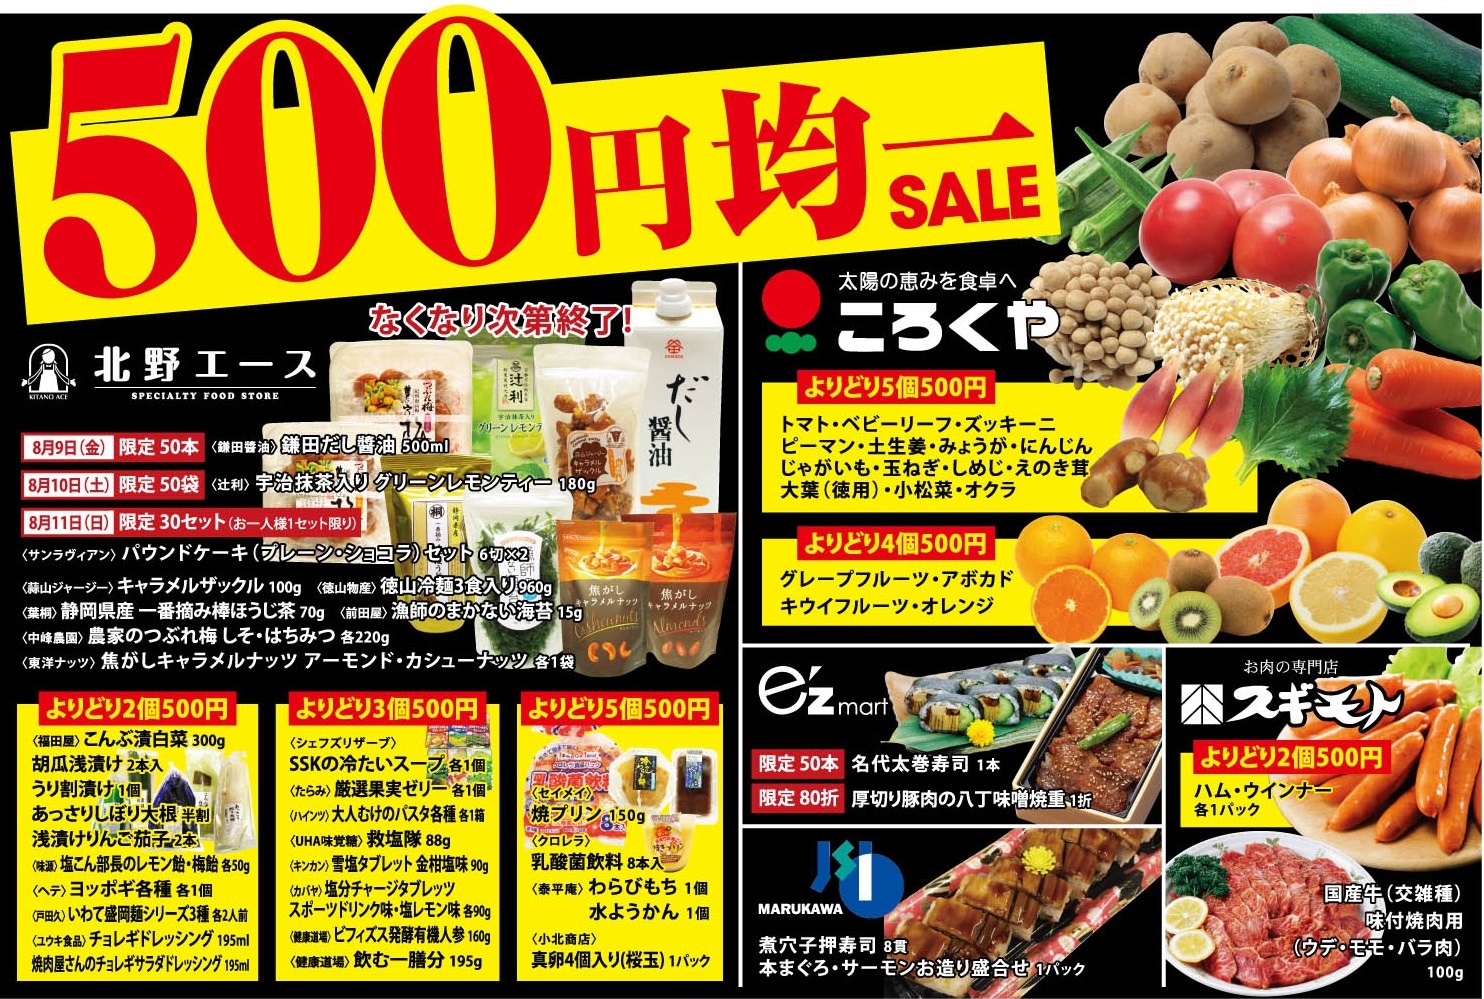 【SHOP NEWS】B1F フードマーケット 500円均一セール！【8/9(金)～8/13(火)】 | インフォメーション | 枚方 T